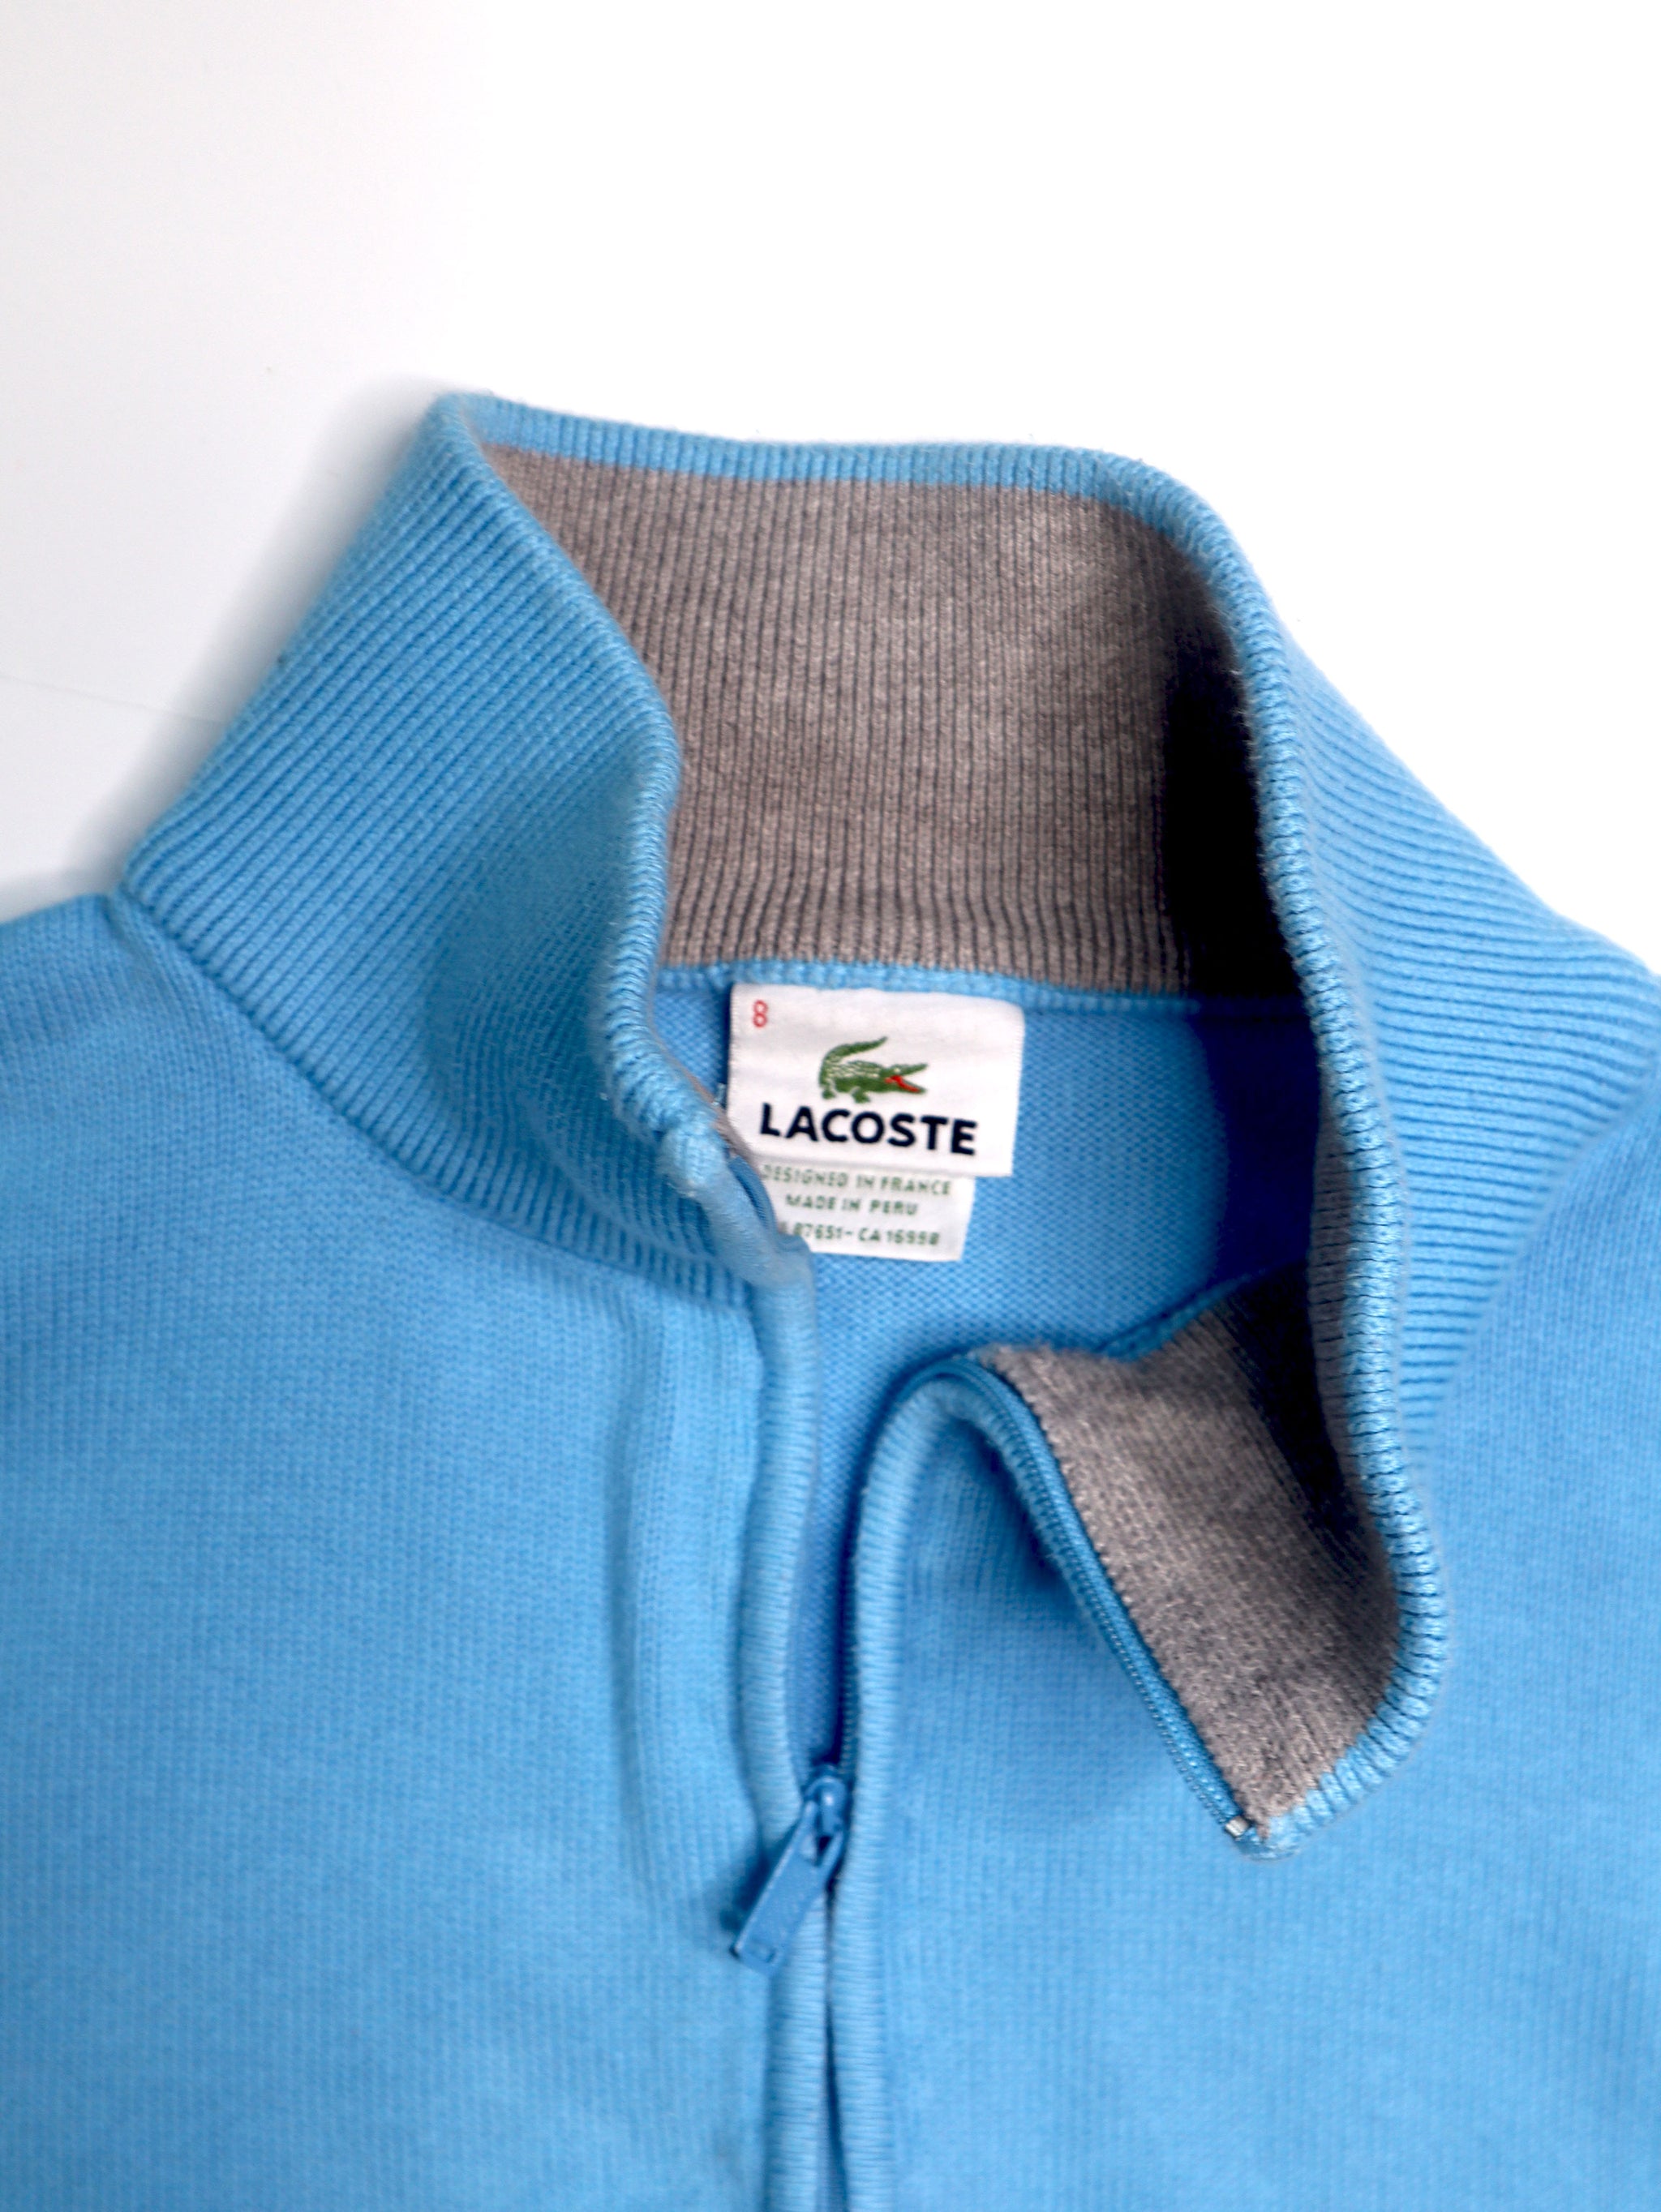 Men's Lacoste 1/4 Zip Sweater